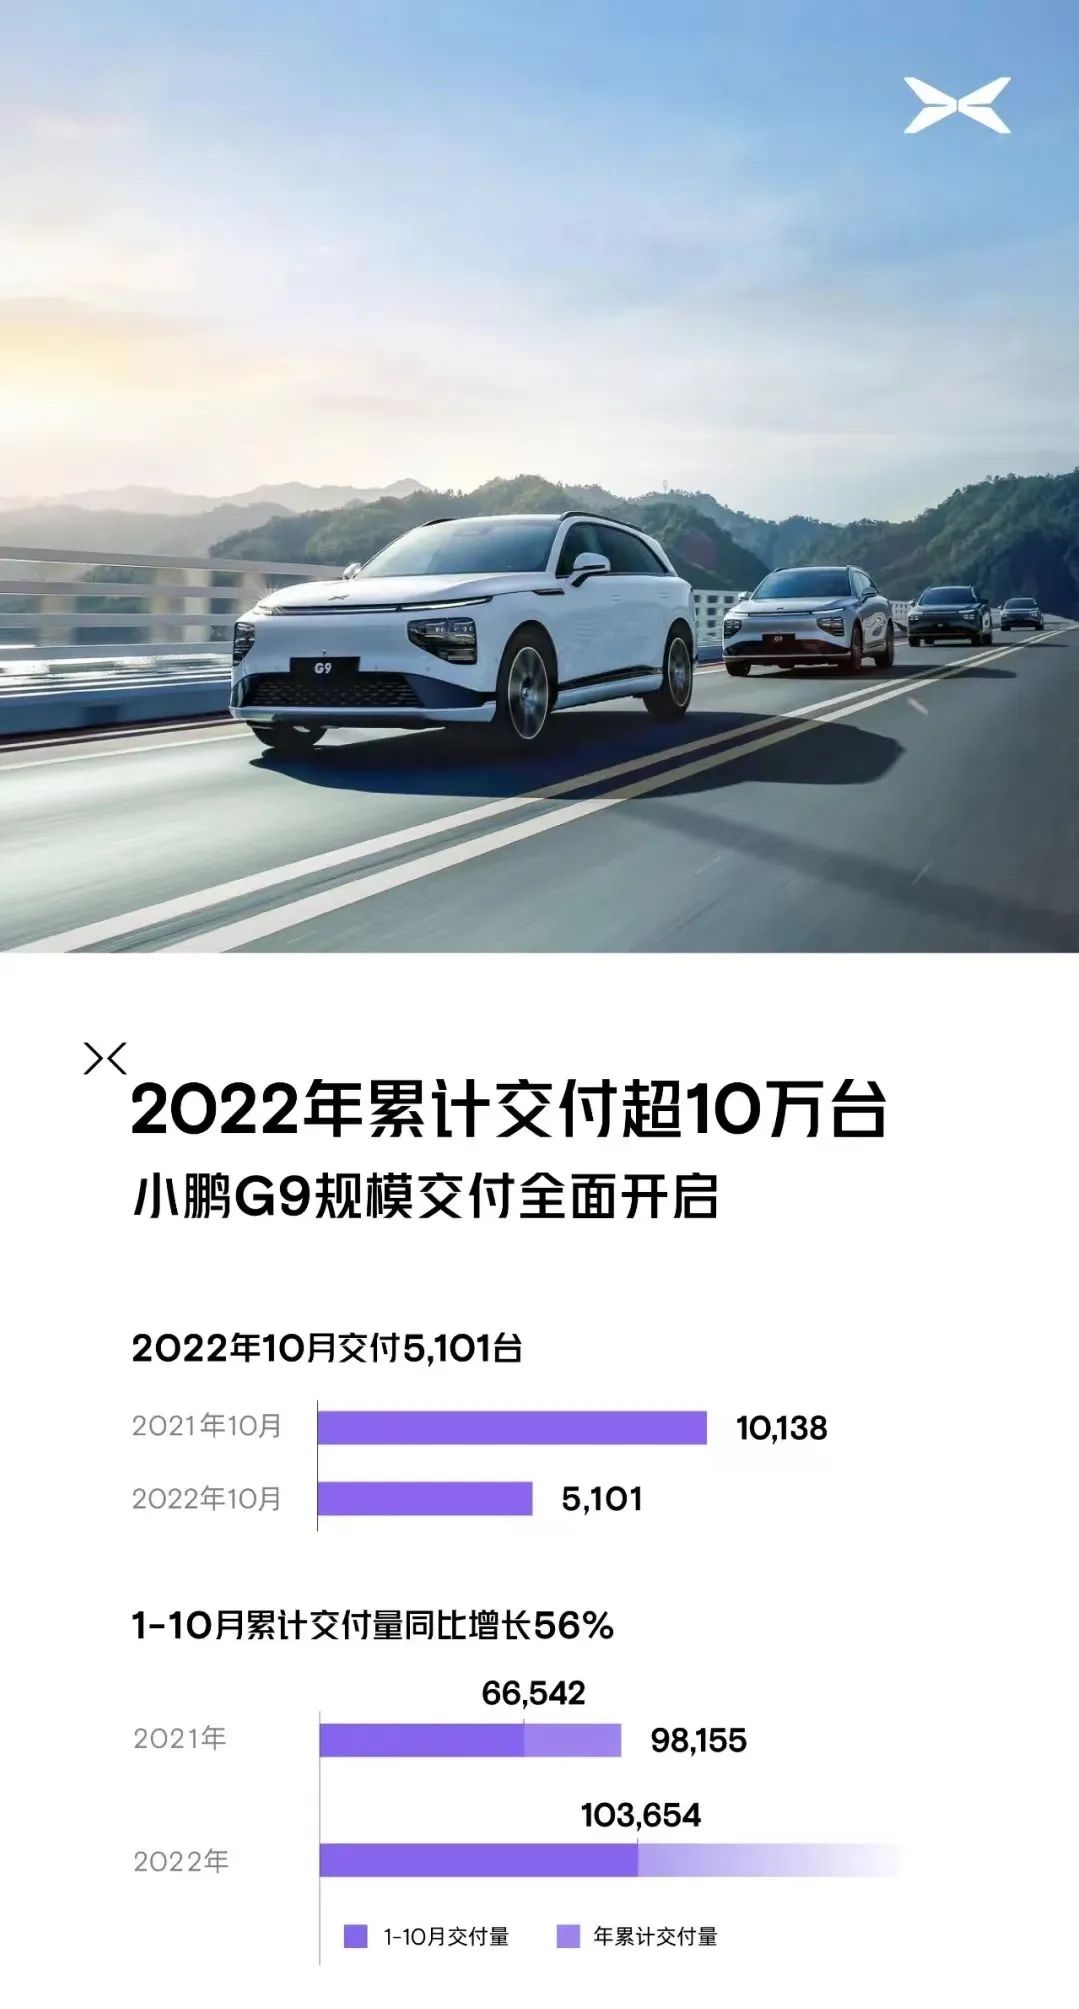 2016年4月中级车销量排名_2017年5月新能源车销量_2022年3月中型车销量排名